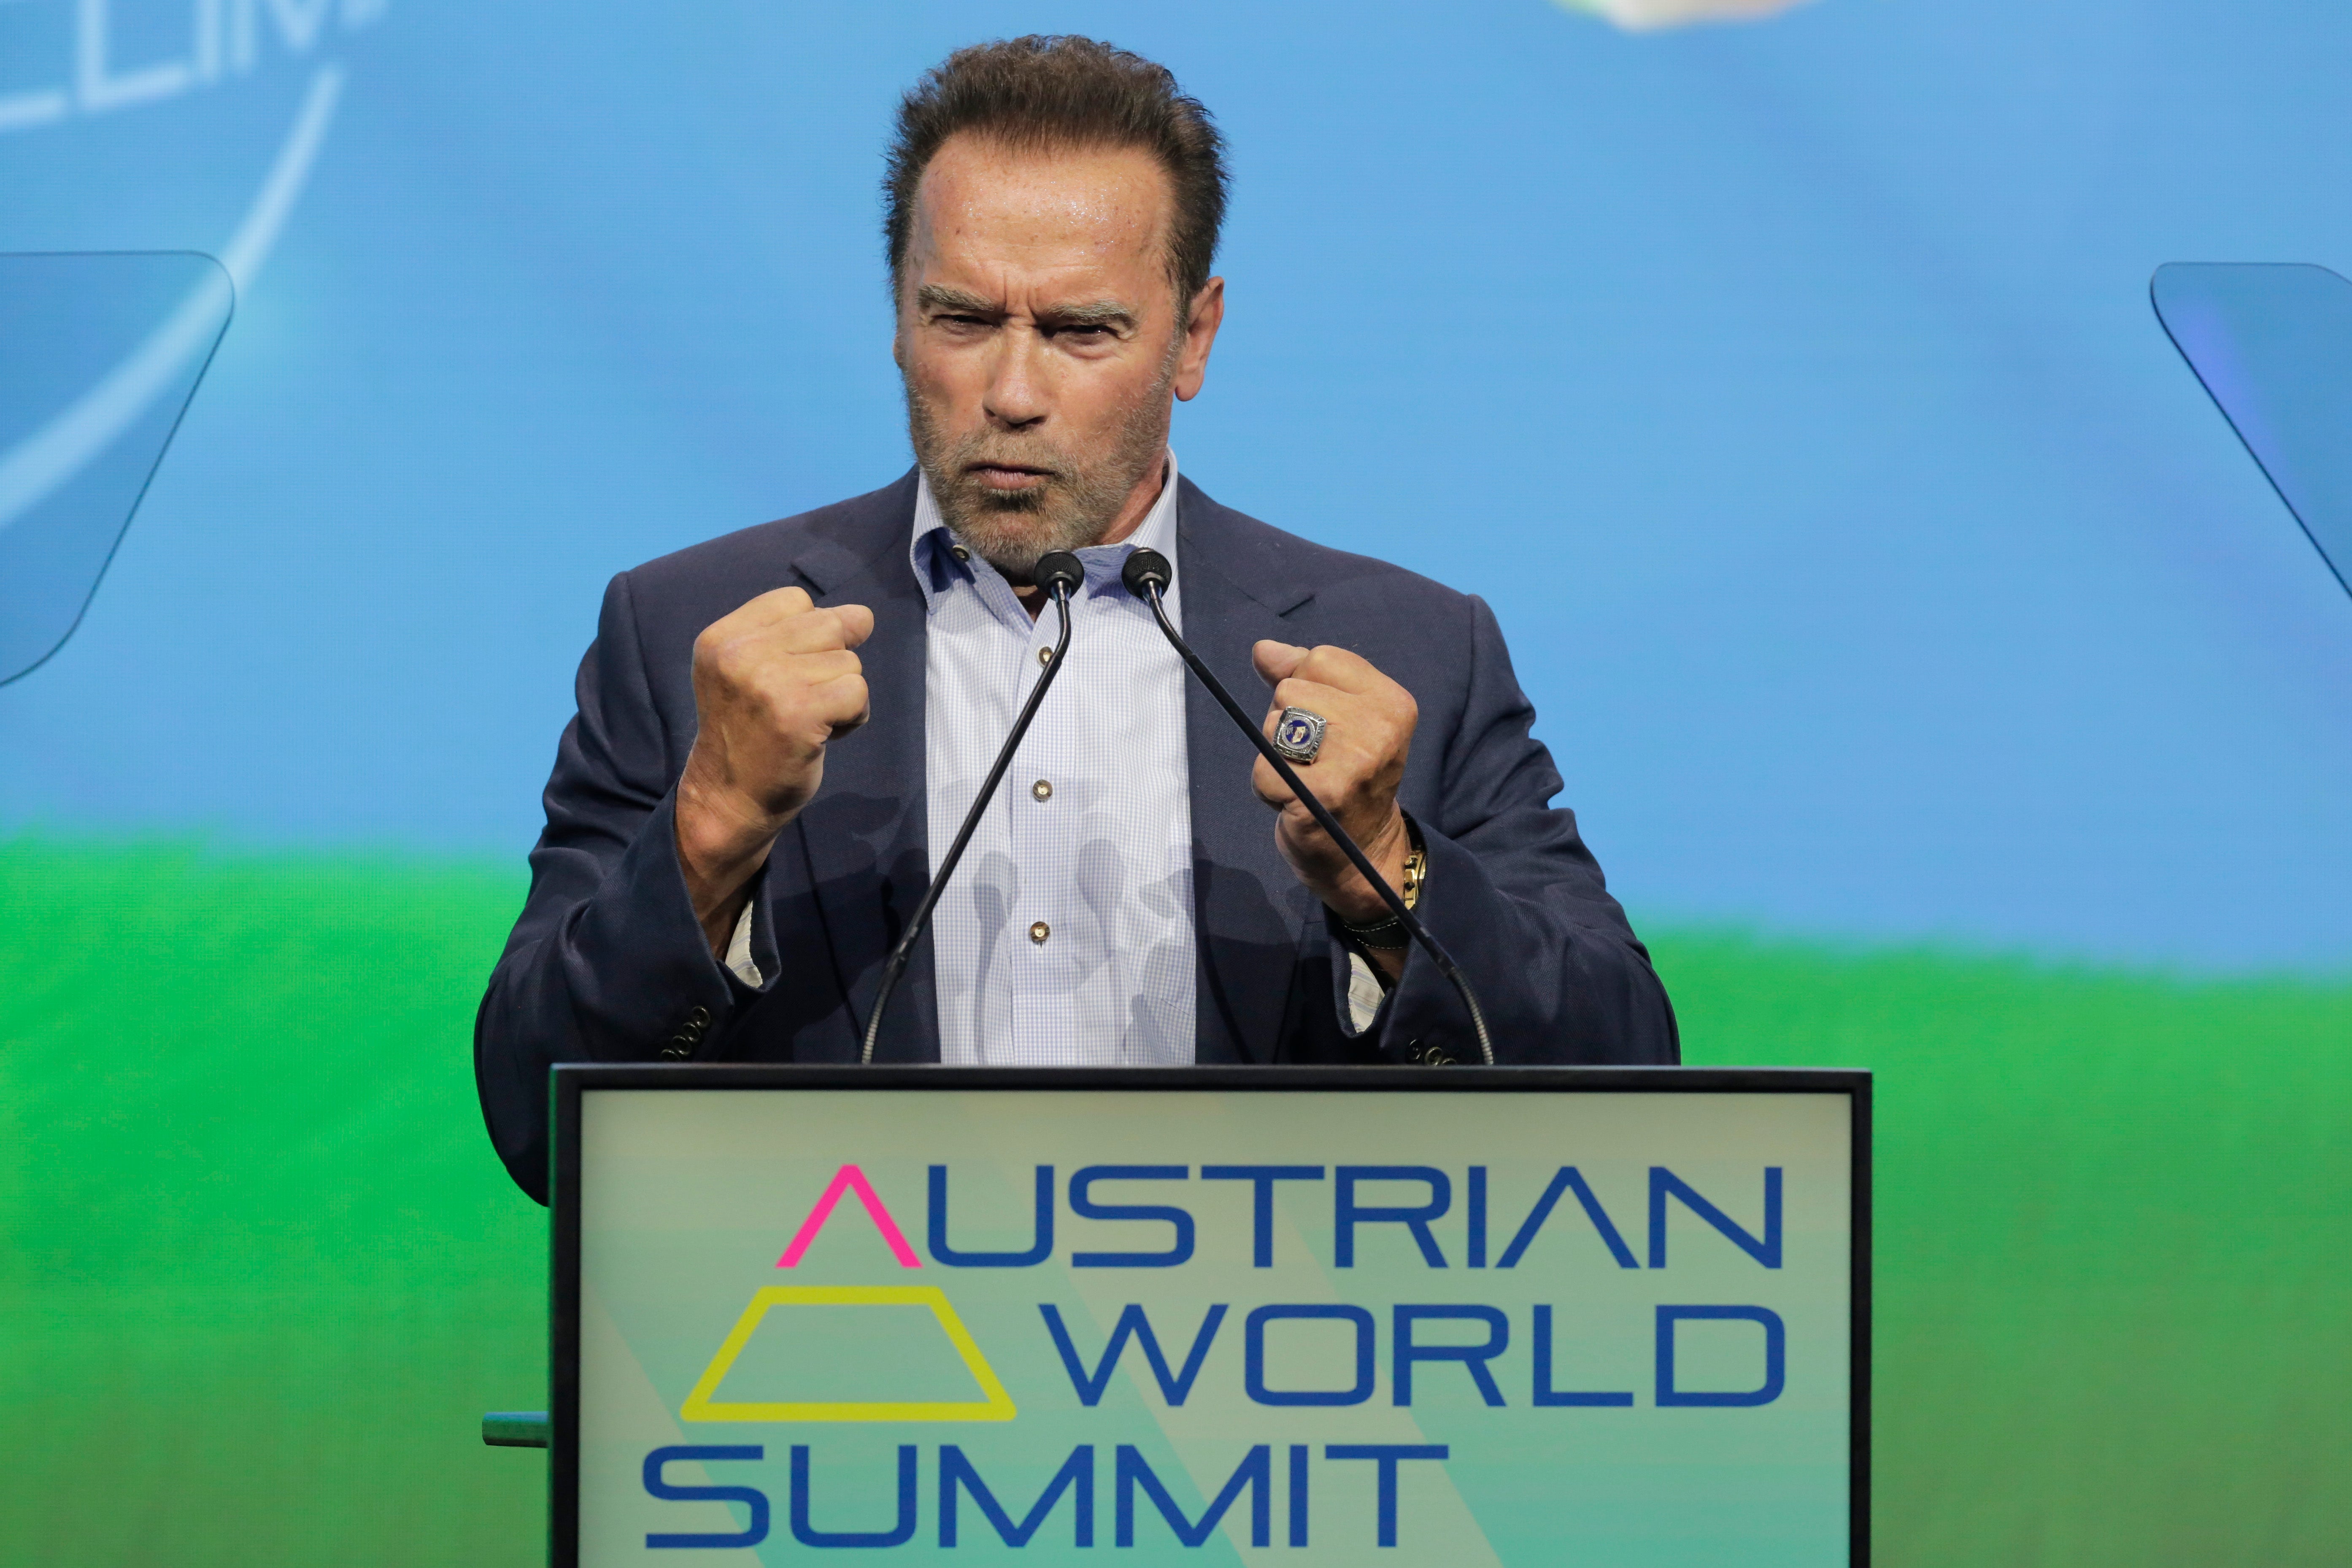 Austria Climate Schwarzenegger